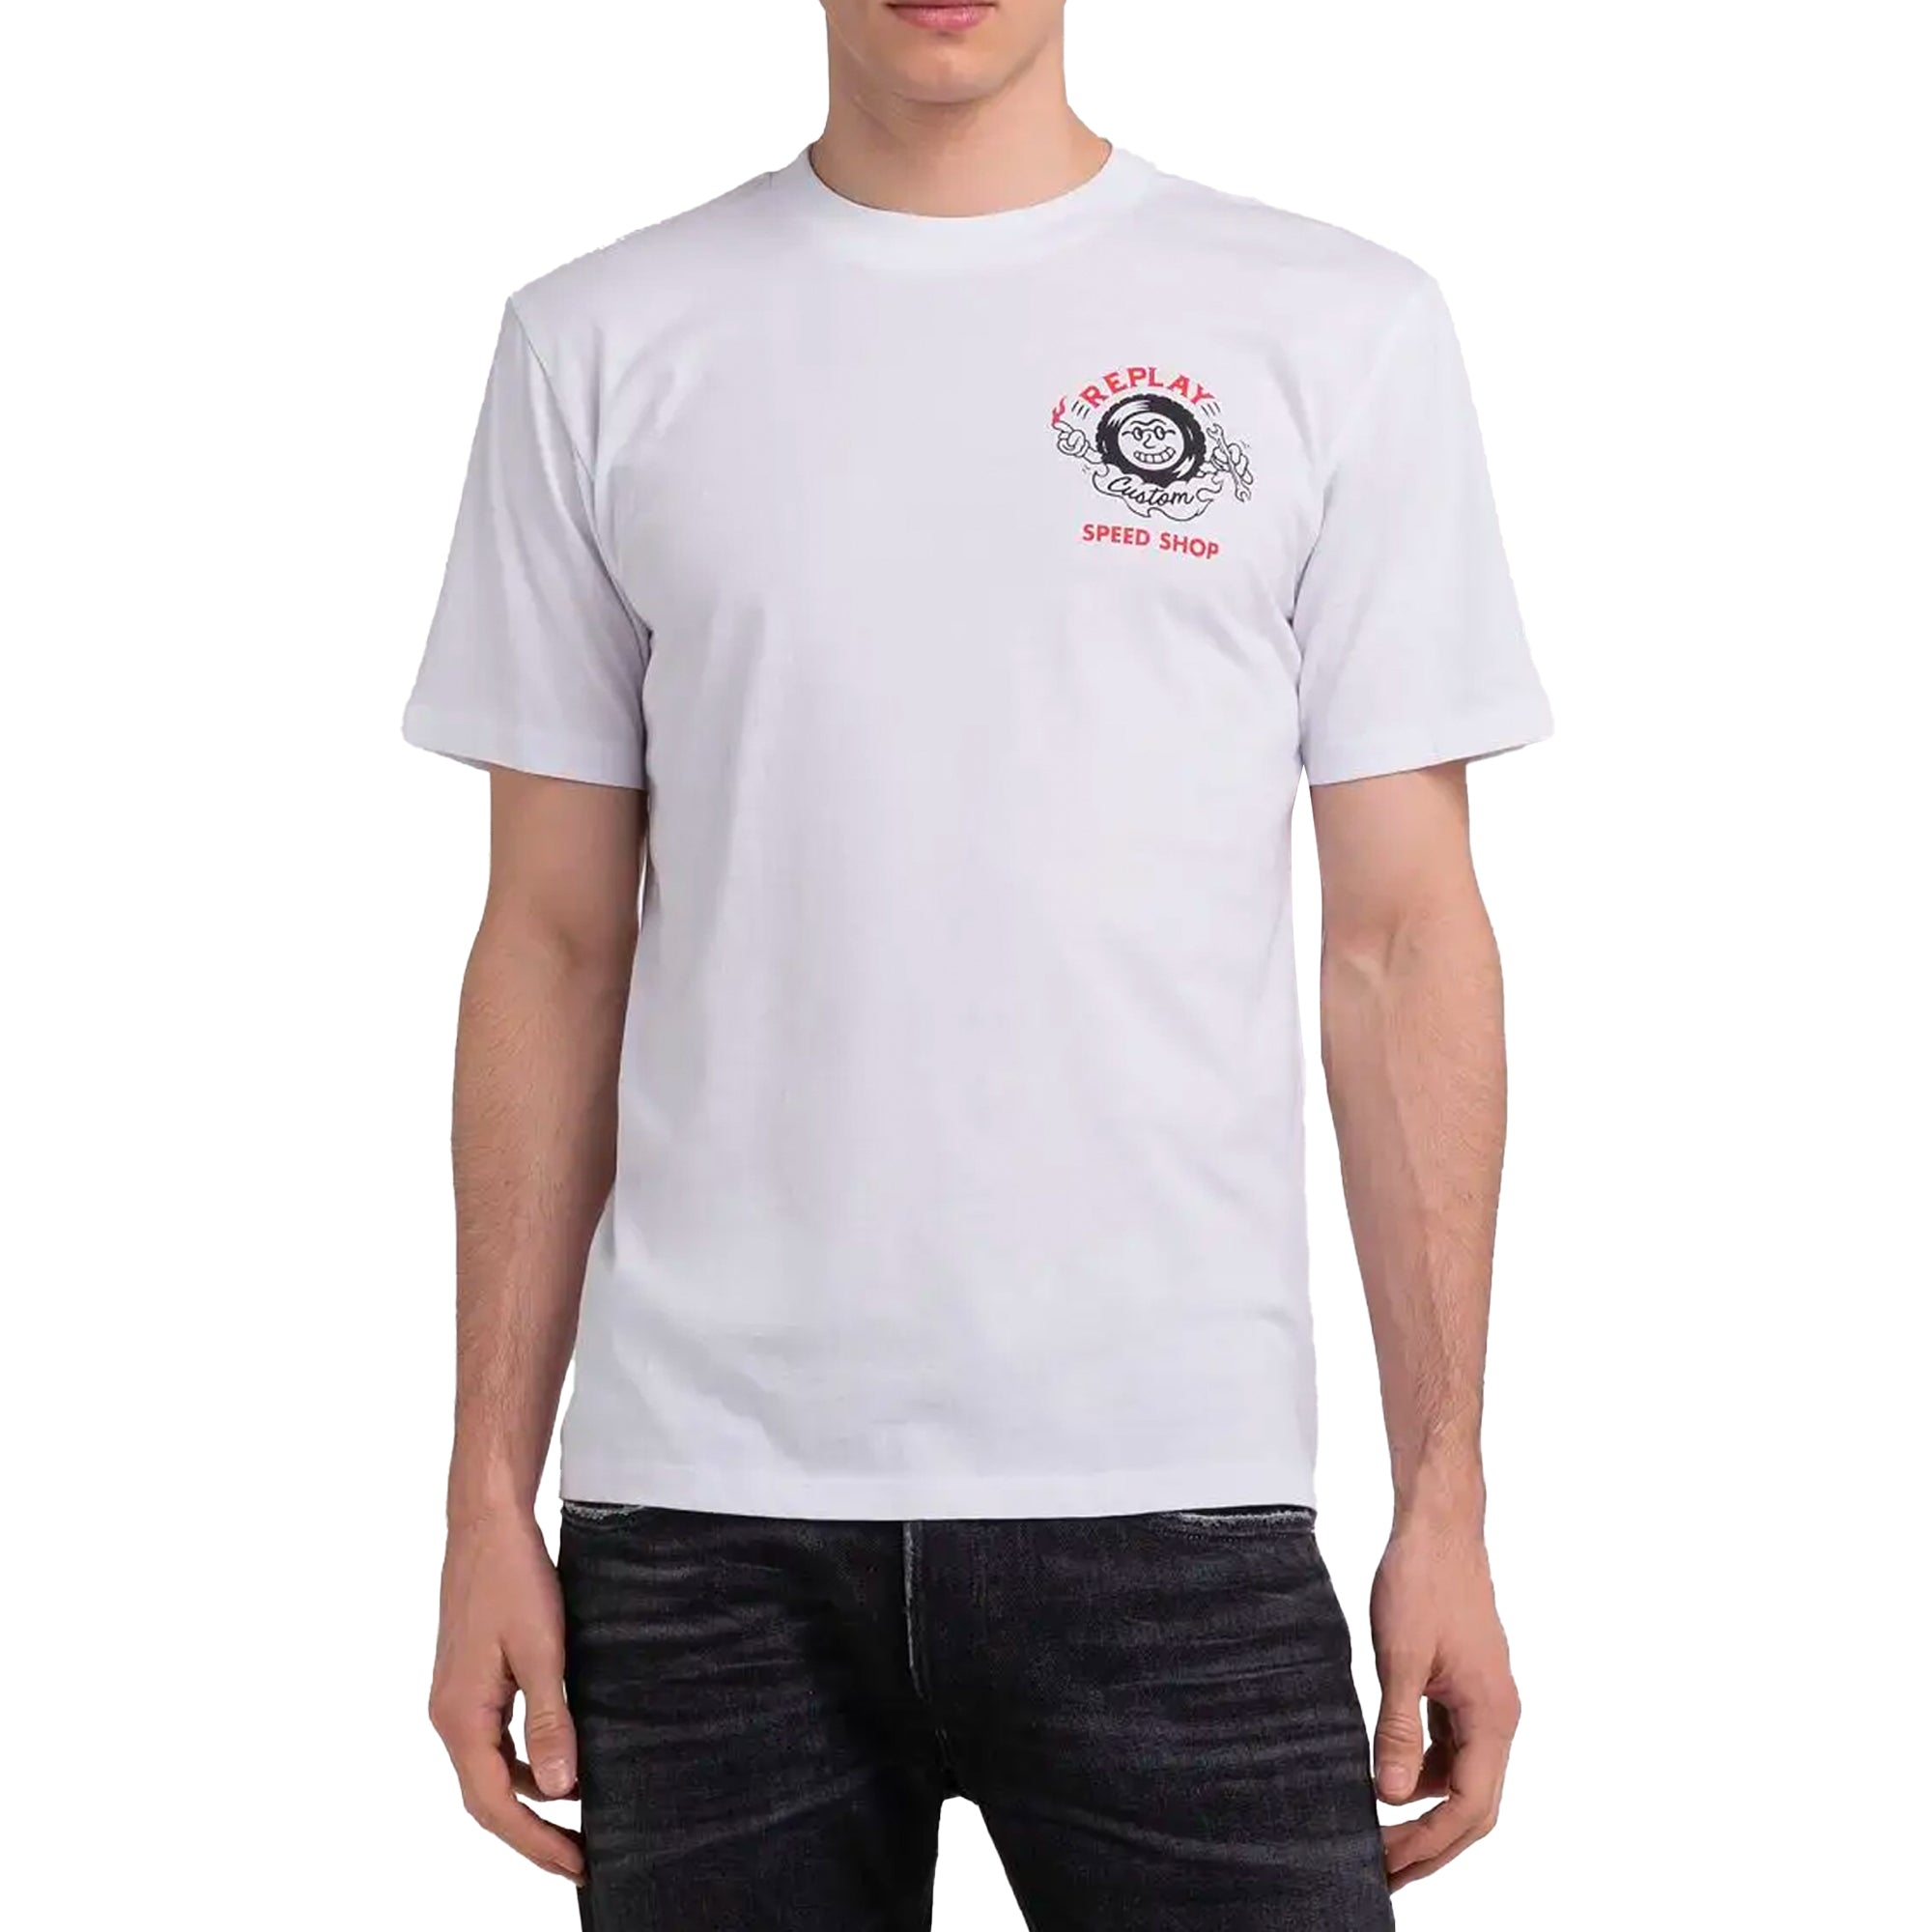 Replay Custom Speed Shop T-Shirt - White